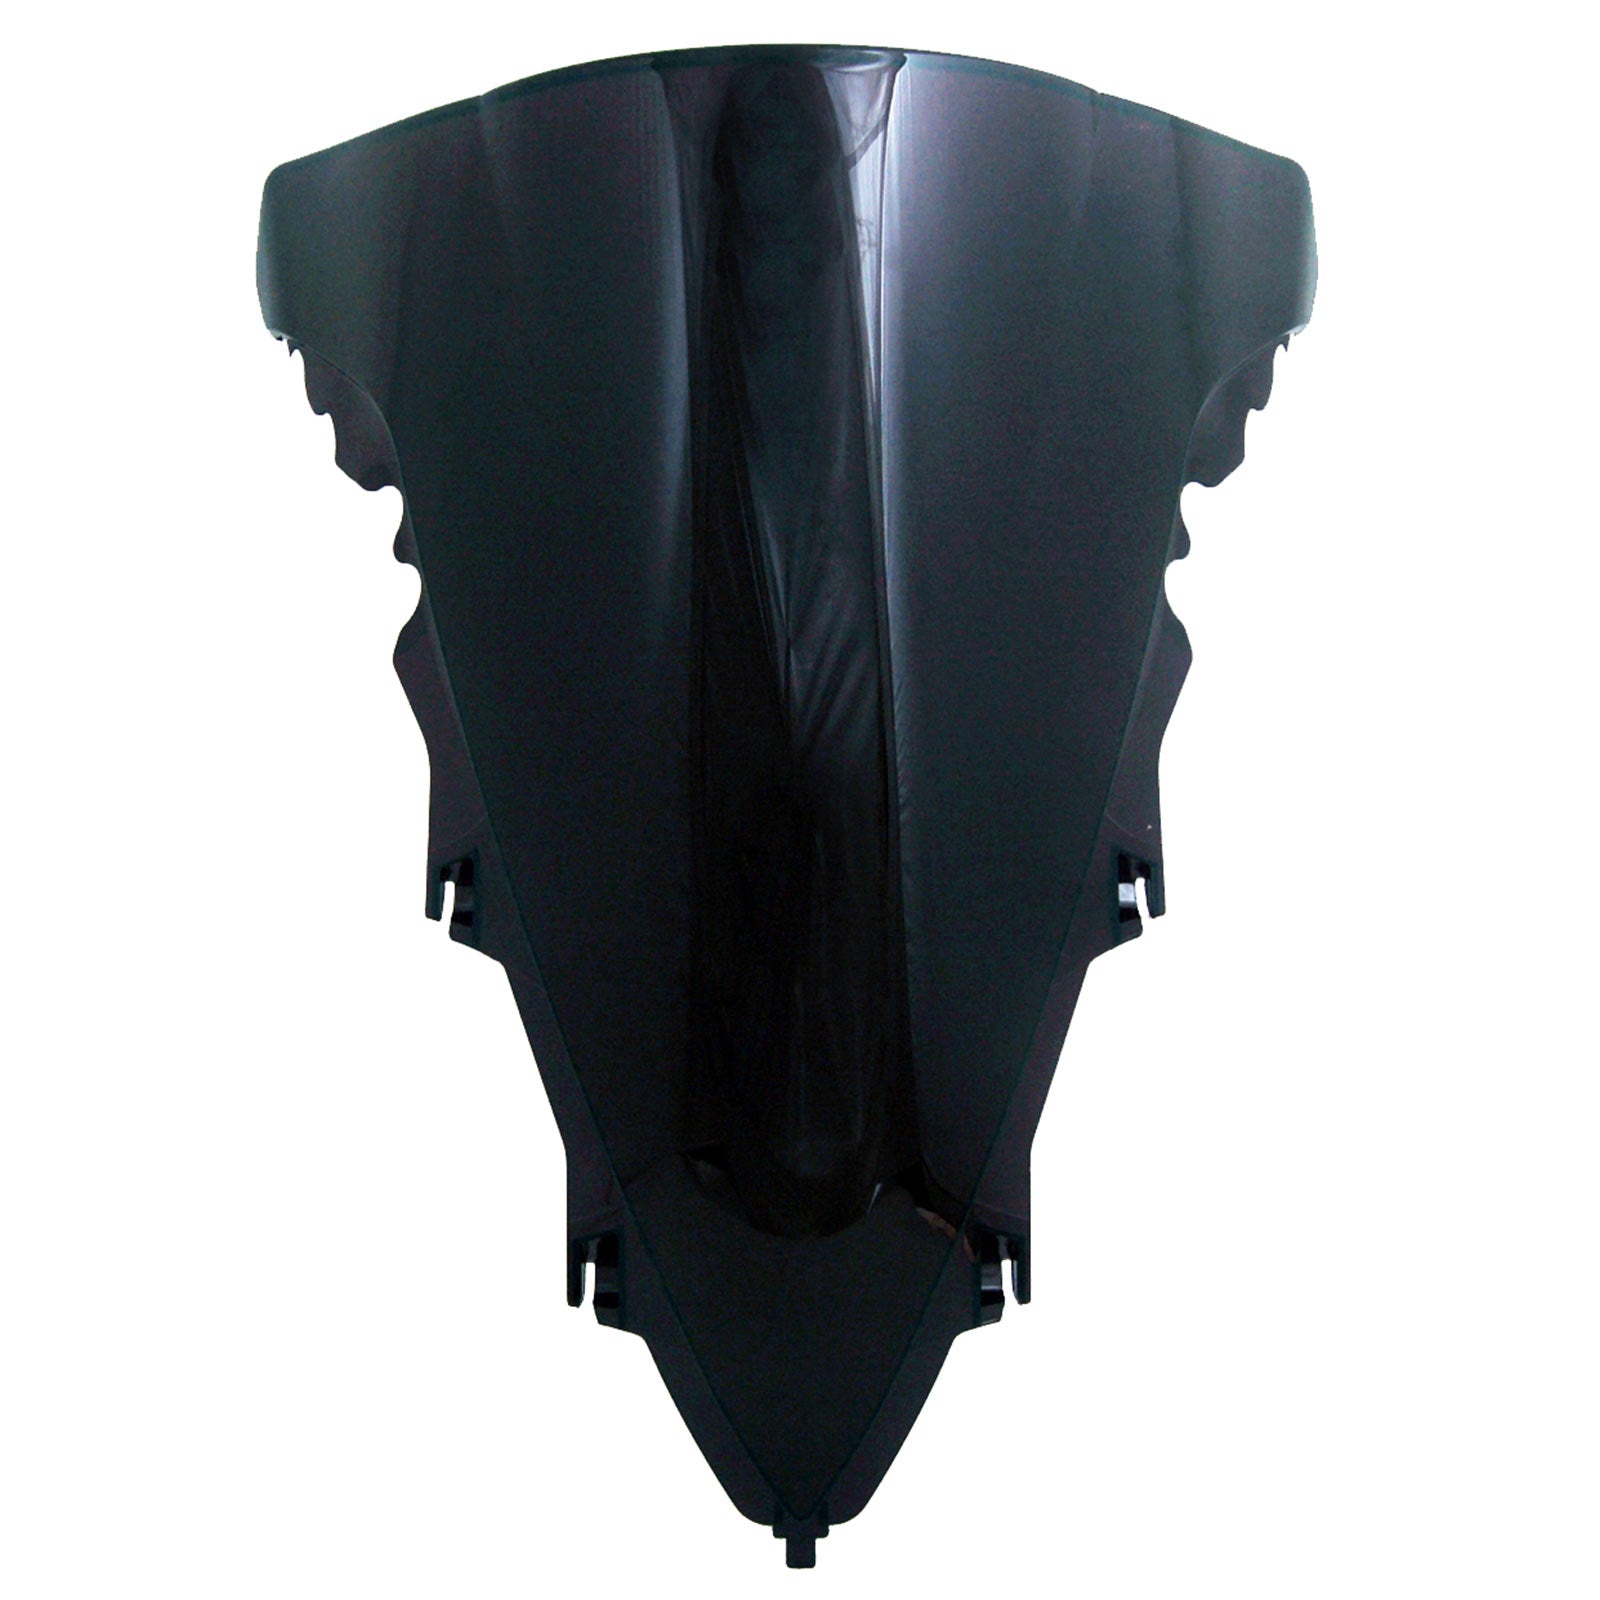 Amotopart Yamaha 2012-2014 YZF 1000 R1 Black Fairing Kit